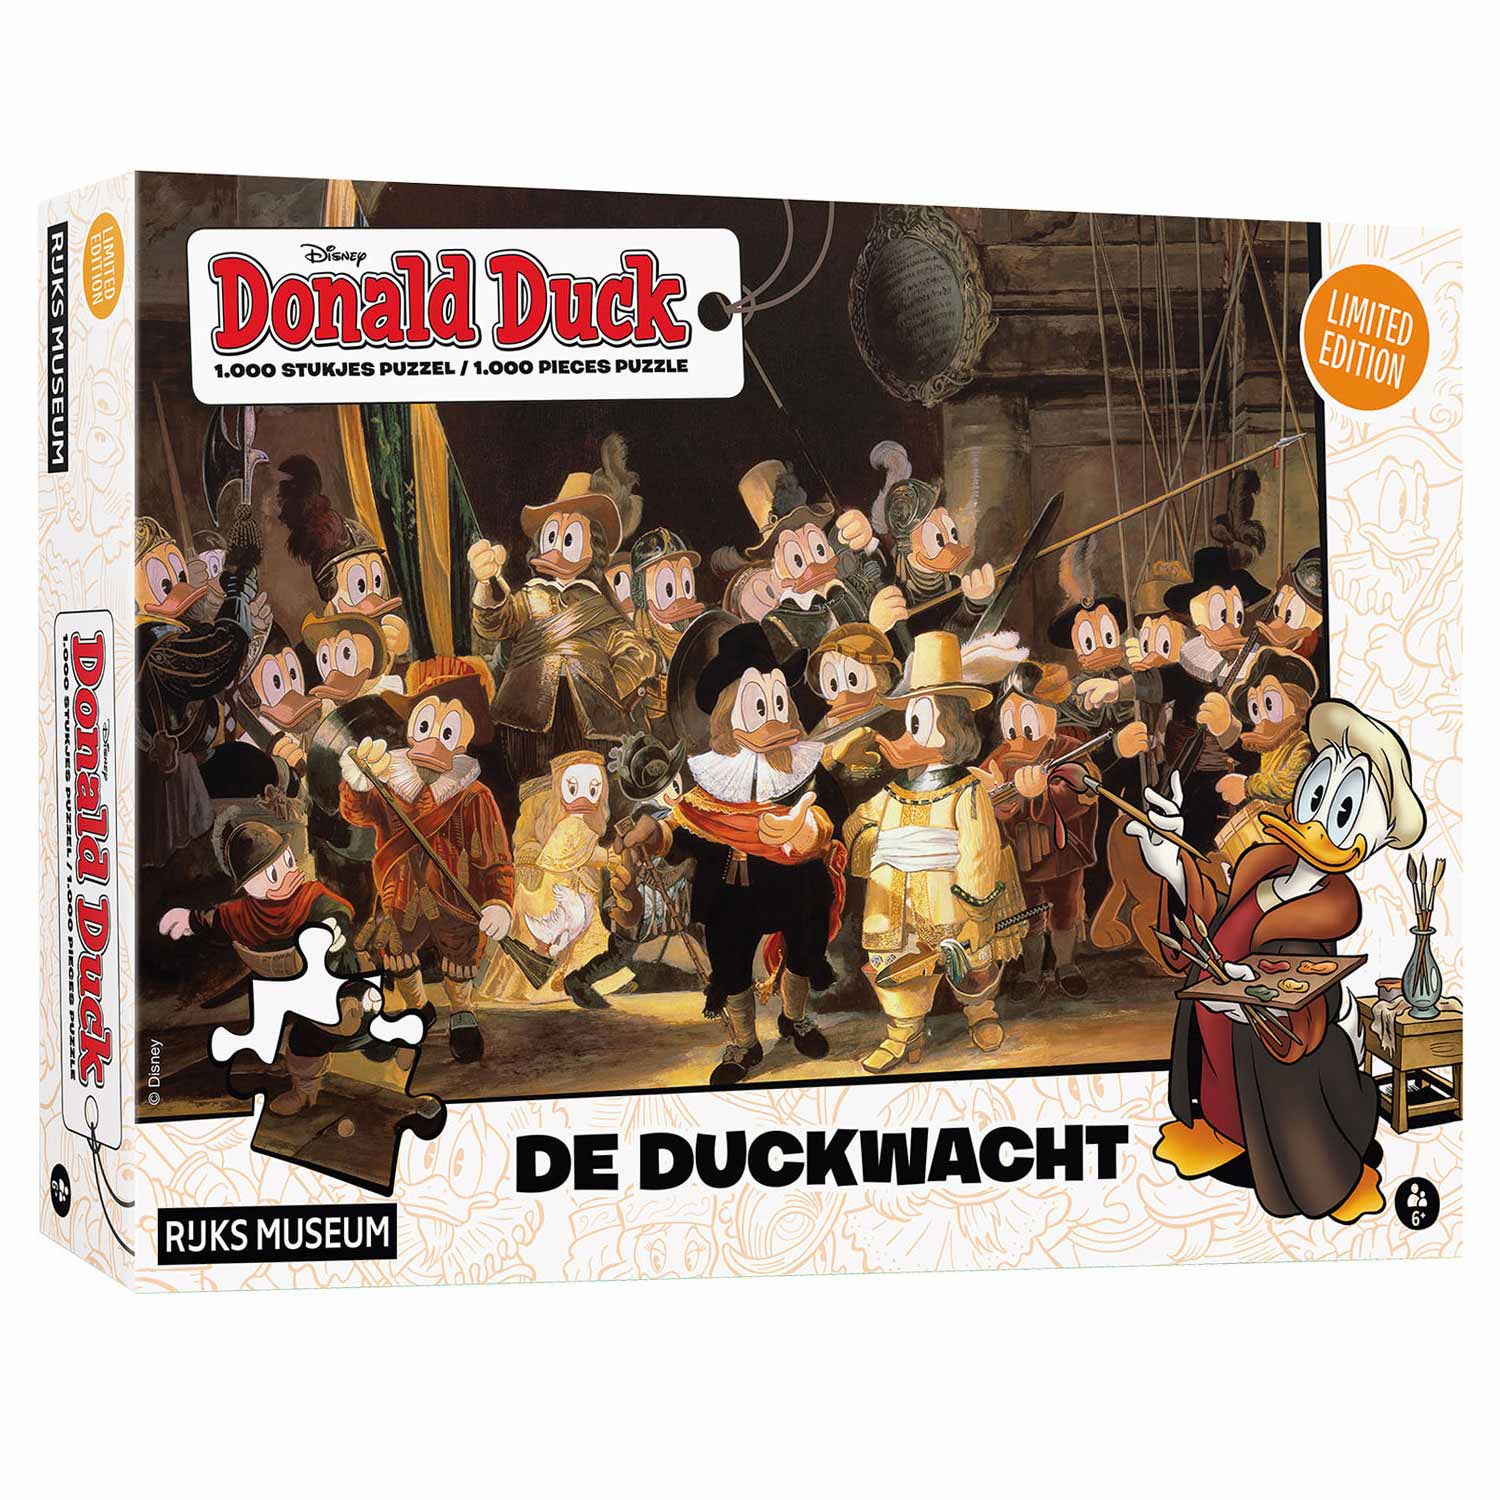 Donald Duck Puzzel - De Duckwacht